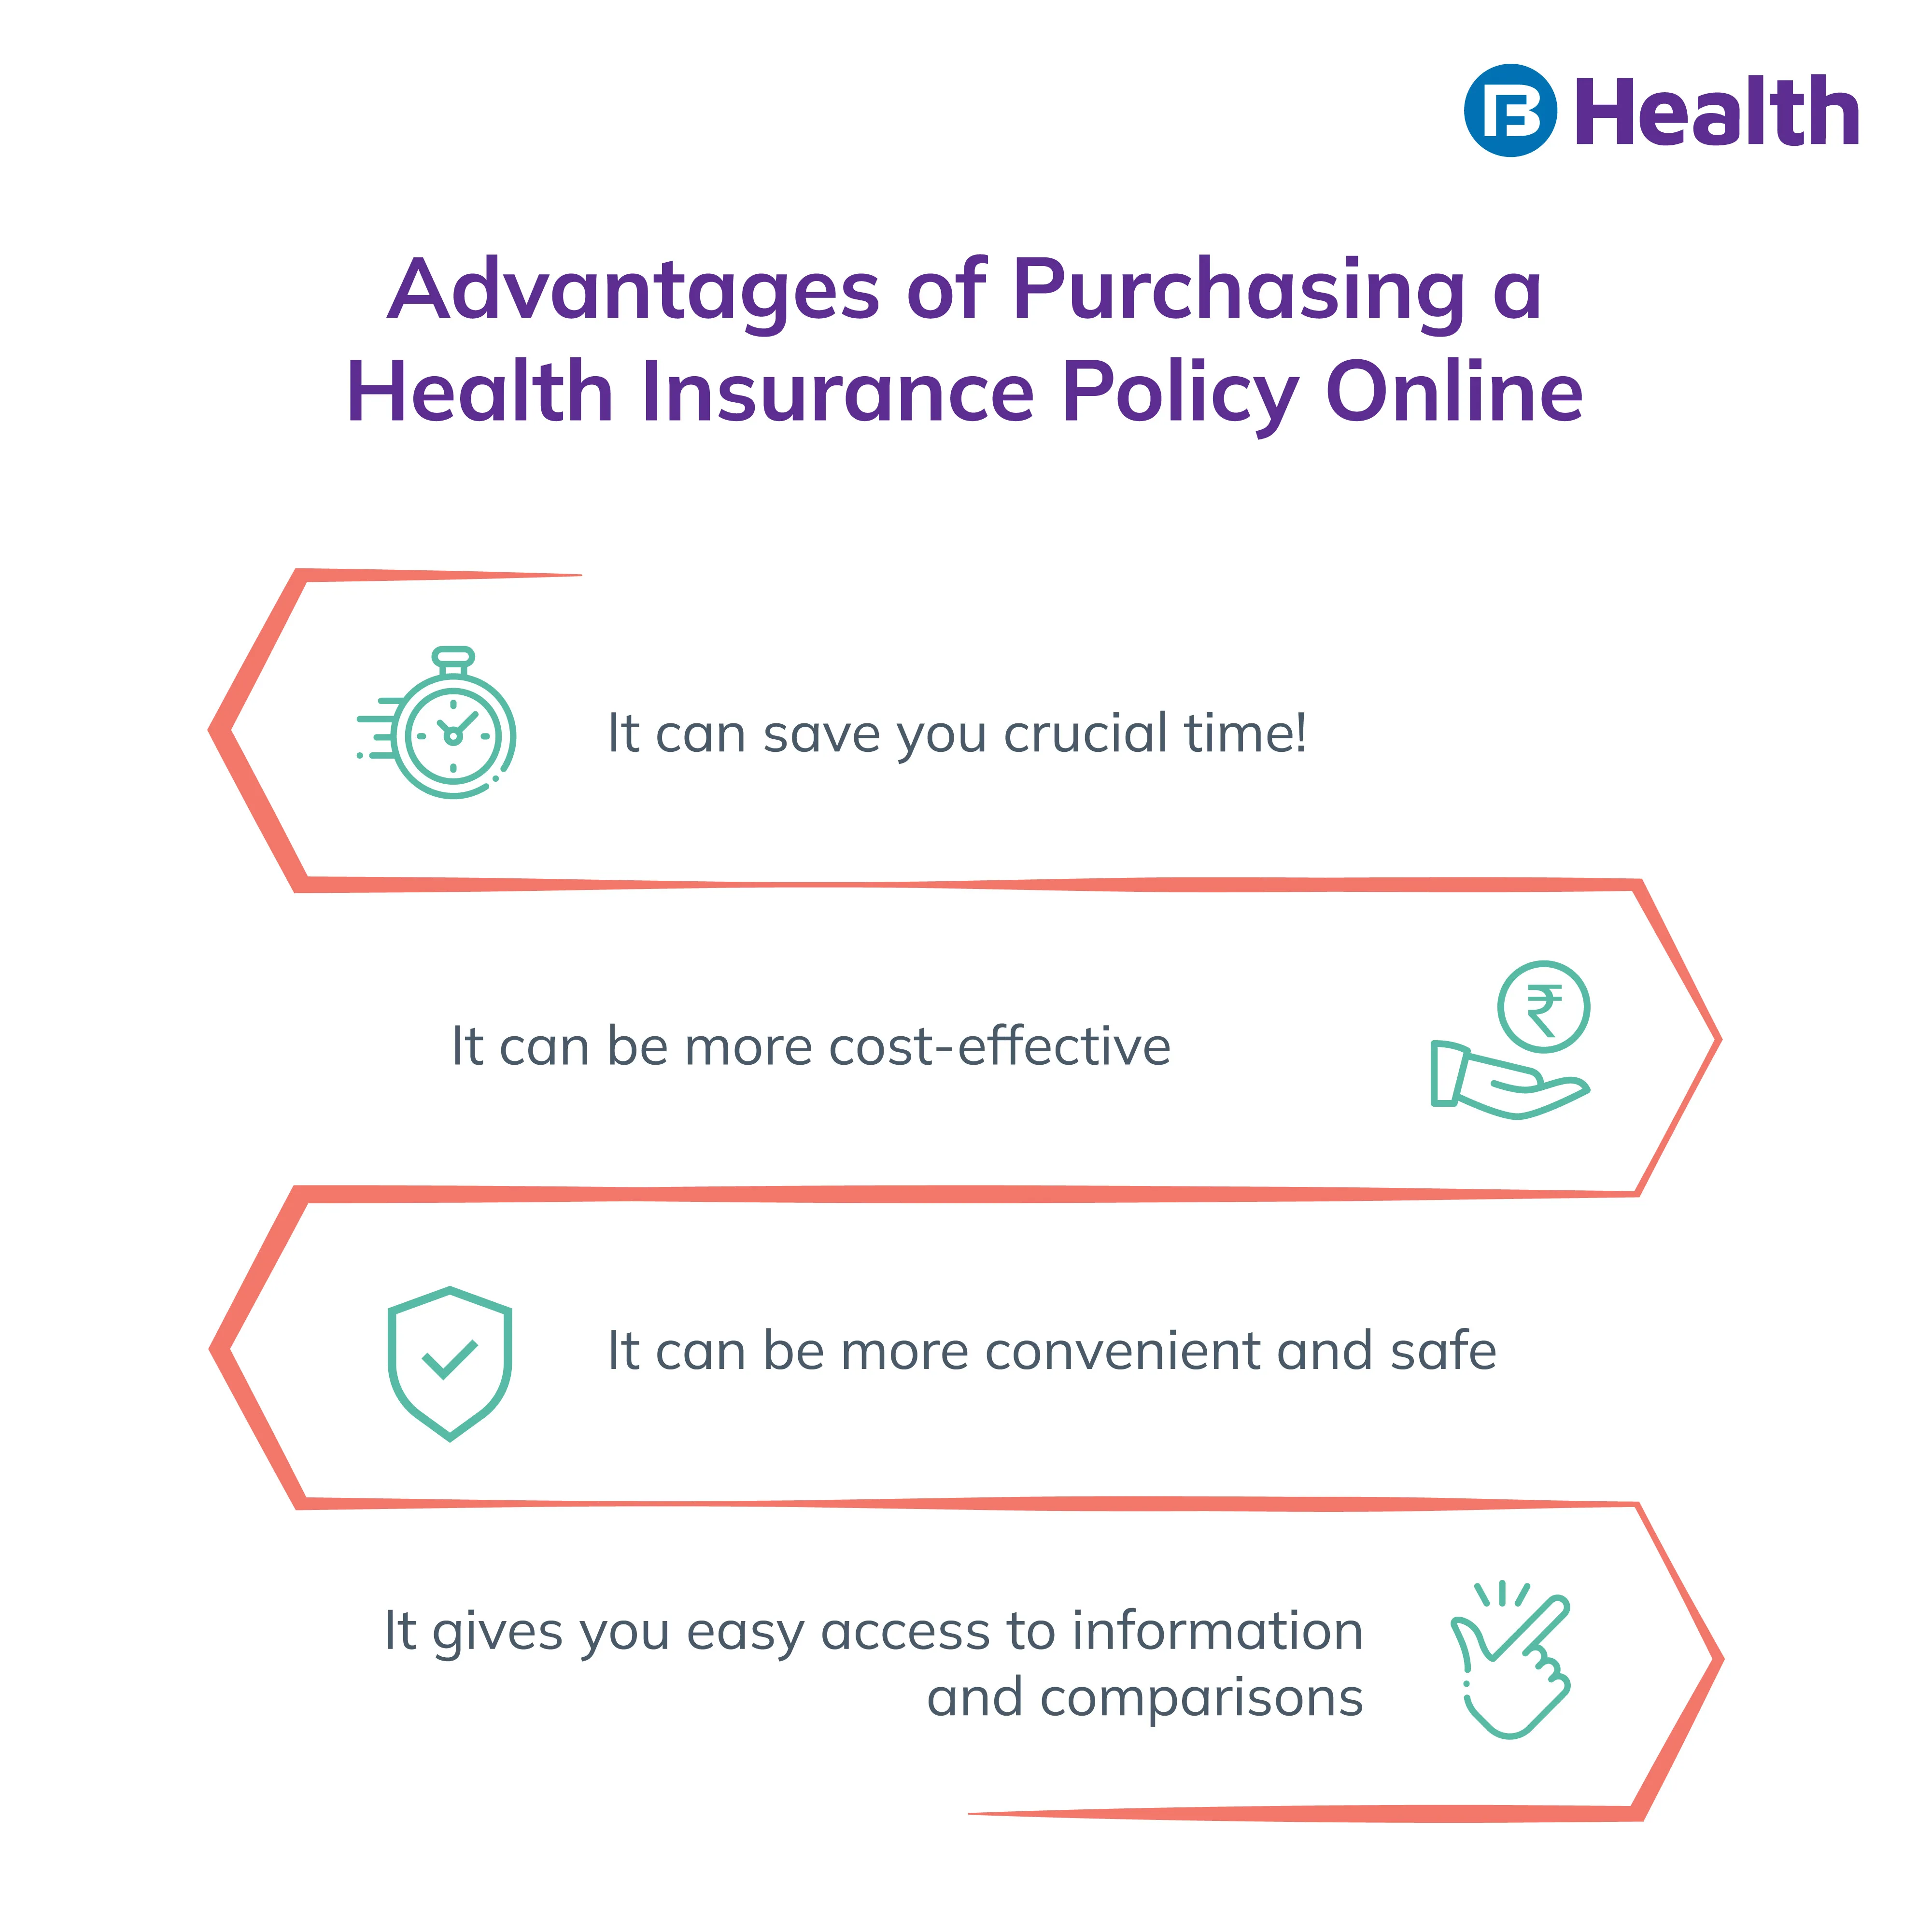 health insurance online vs offline